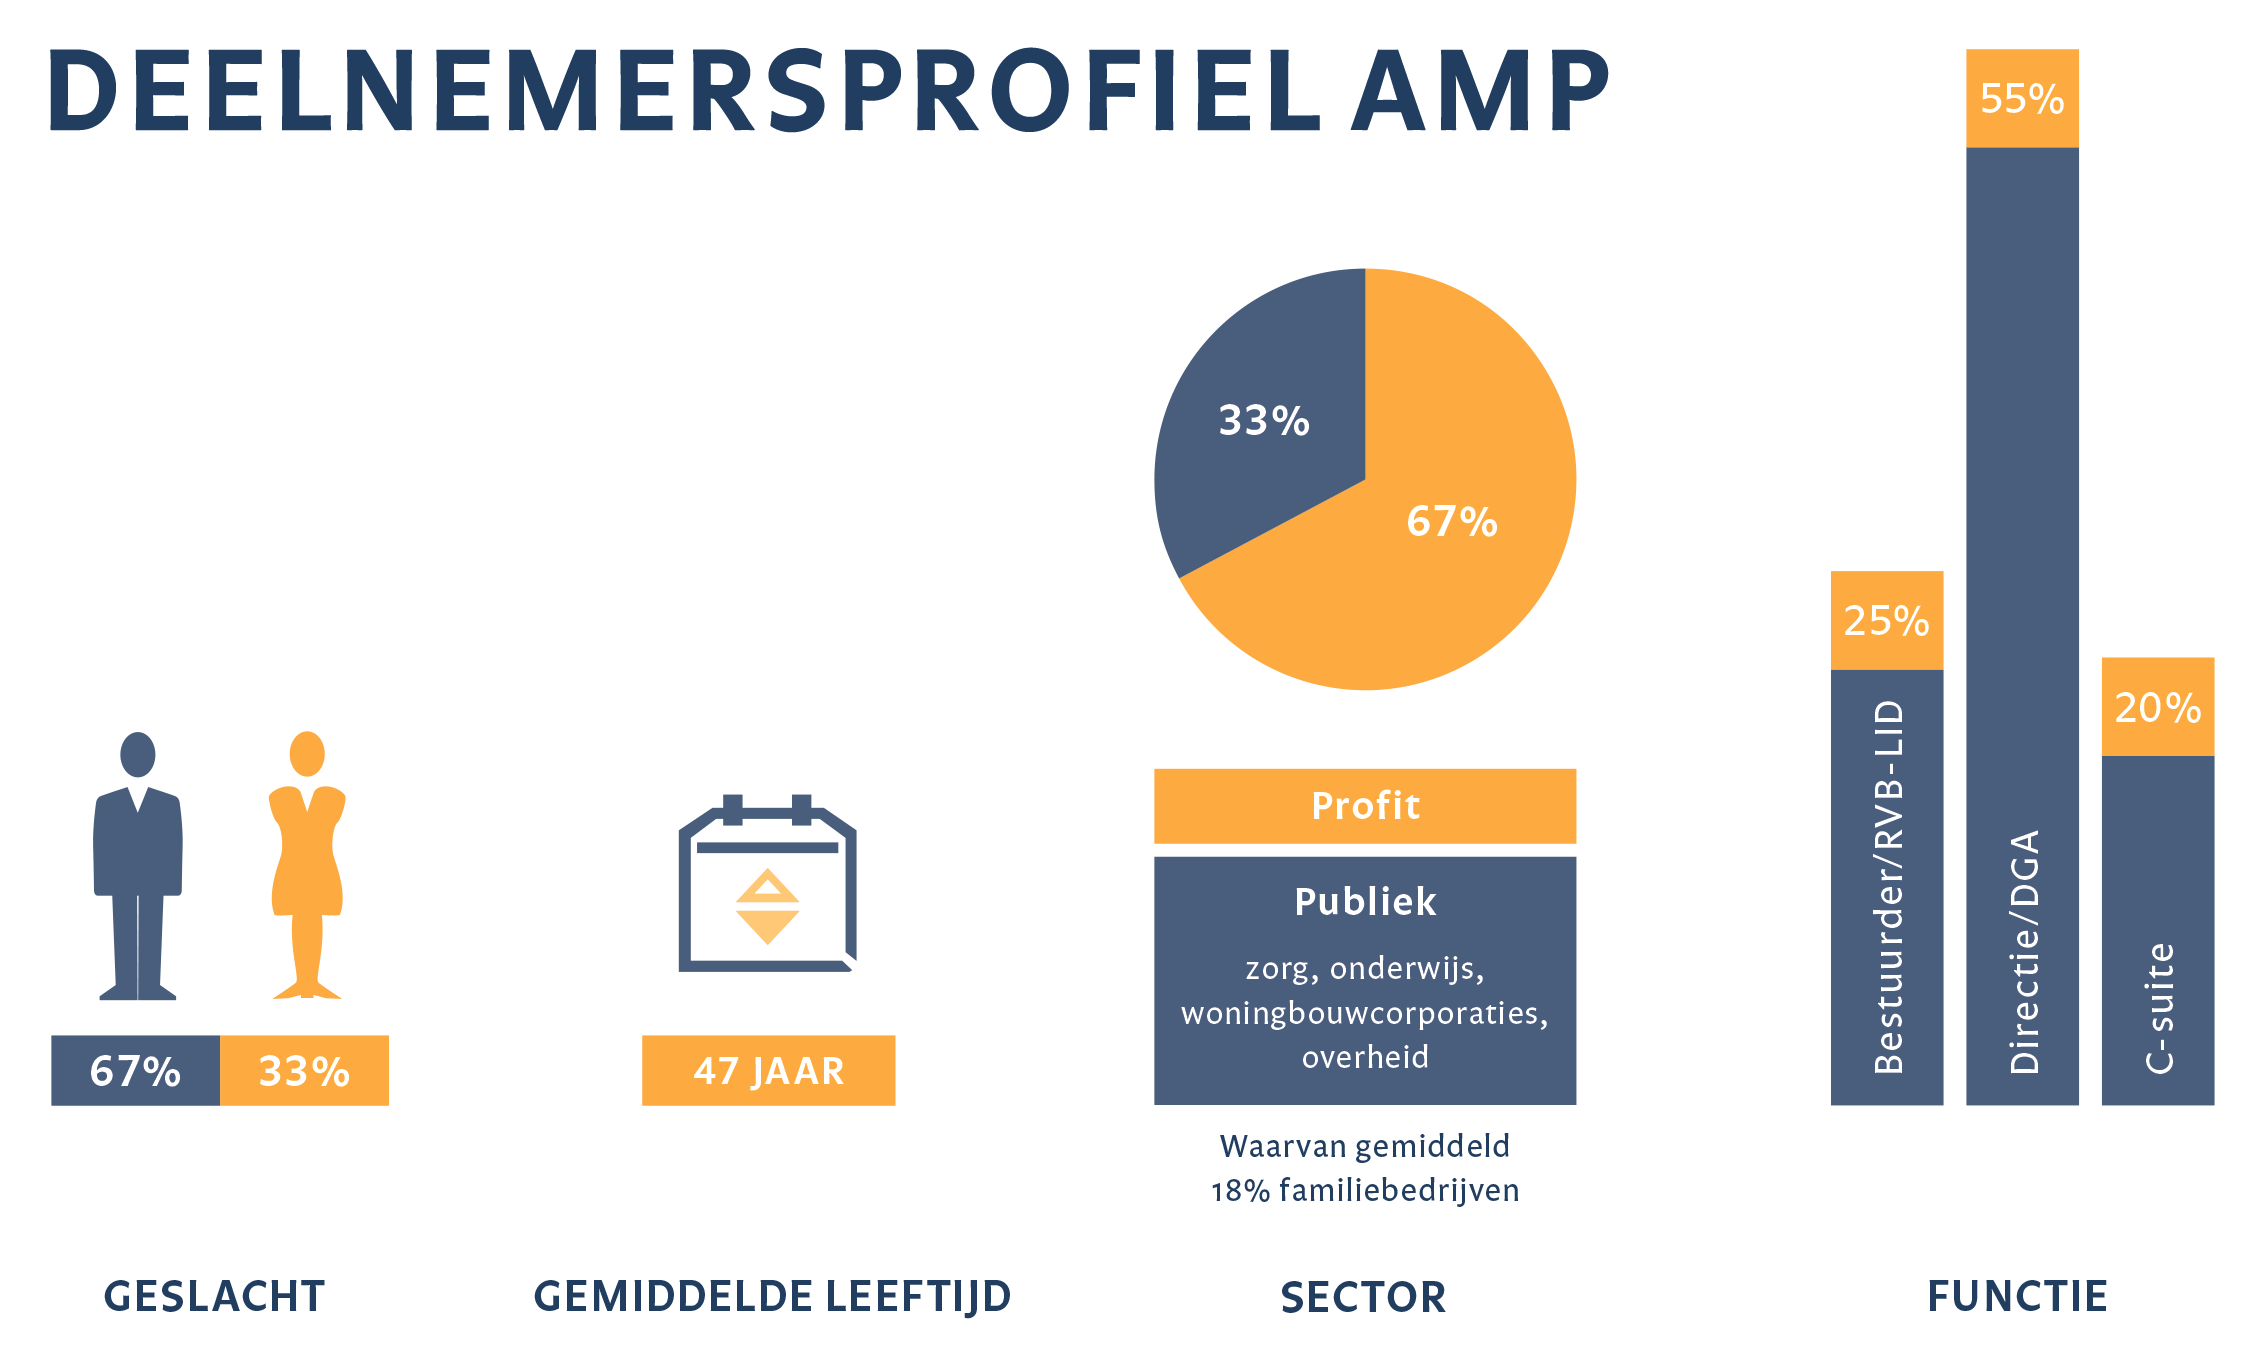 Deelnemersprofiel AMP 2019